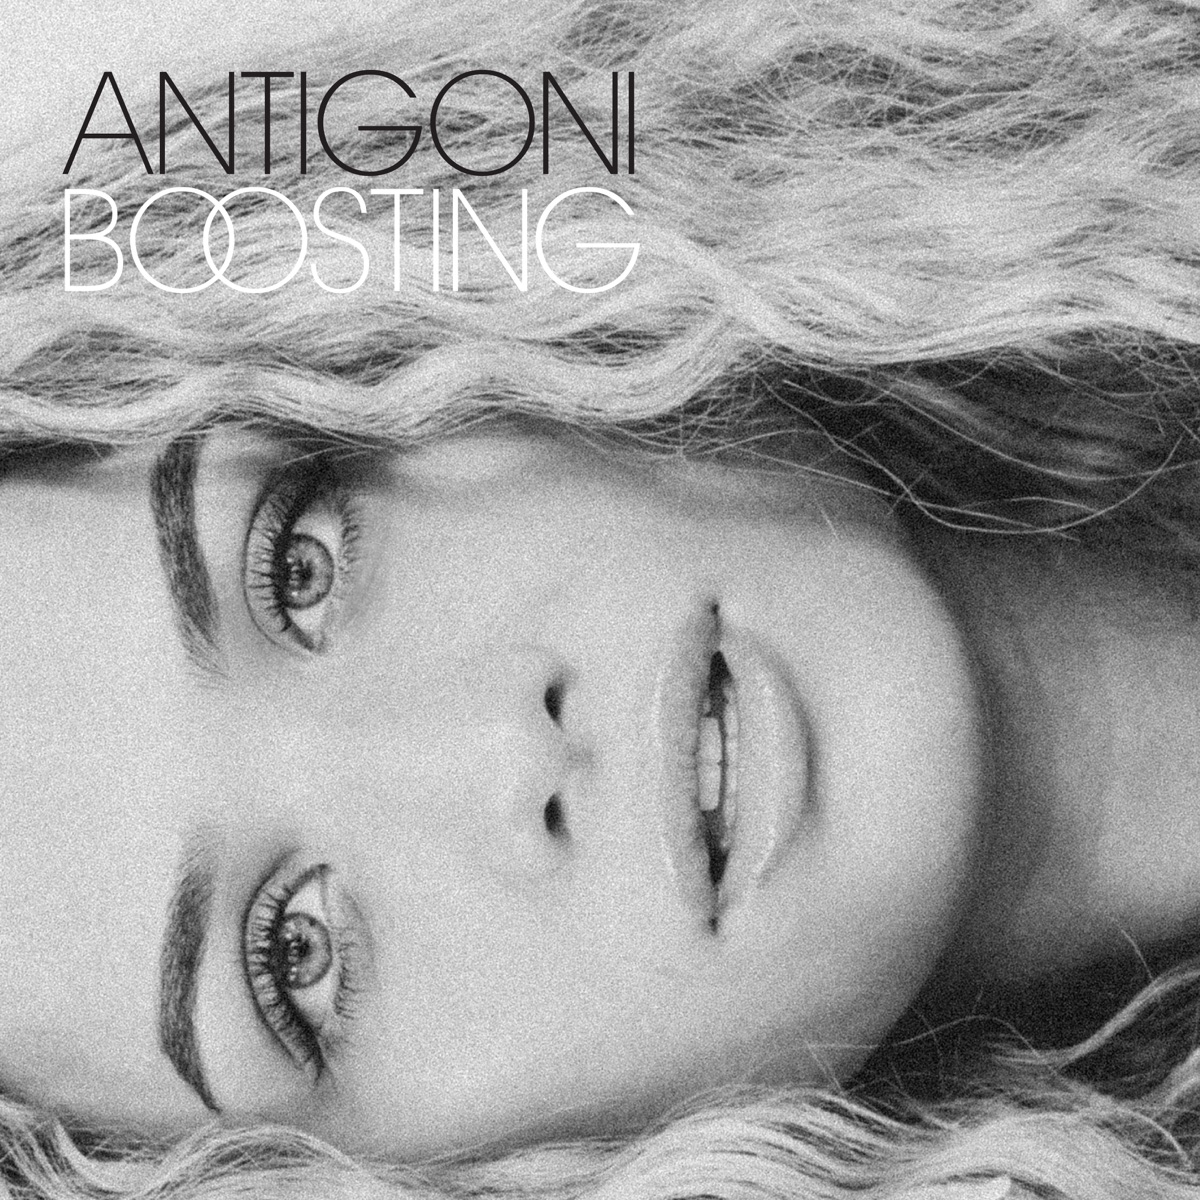 Antigoni — Boosting cover artwork